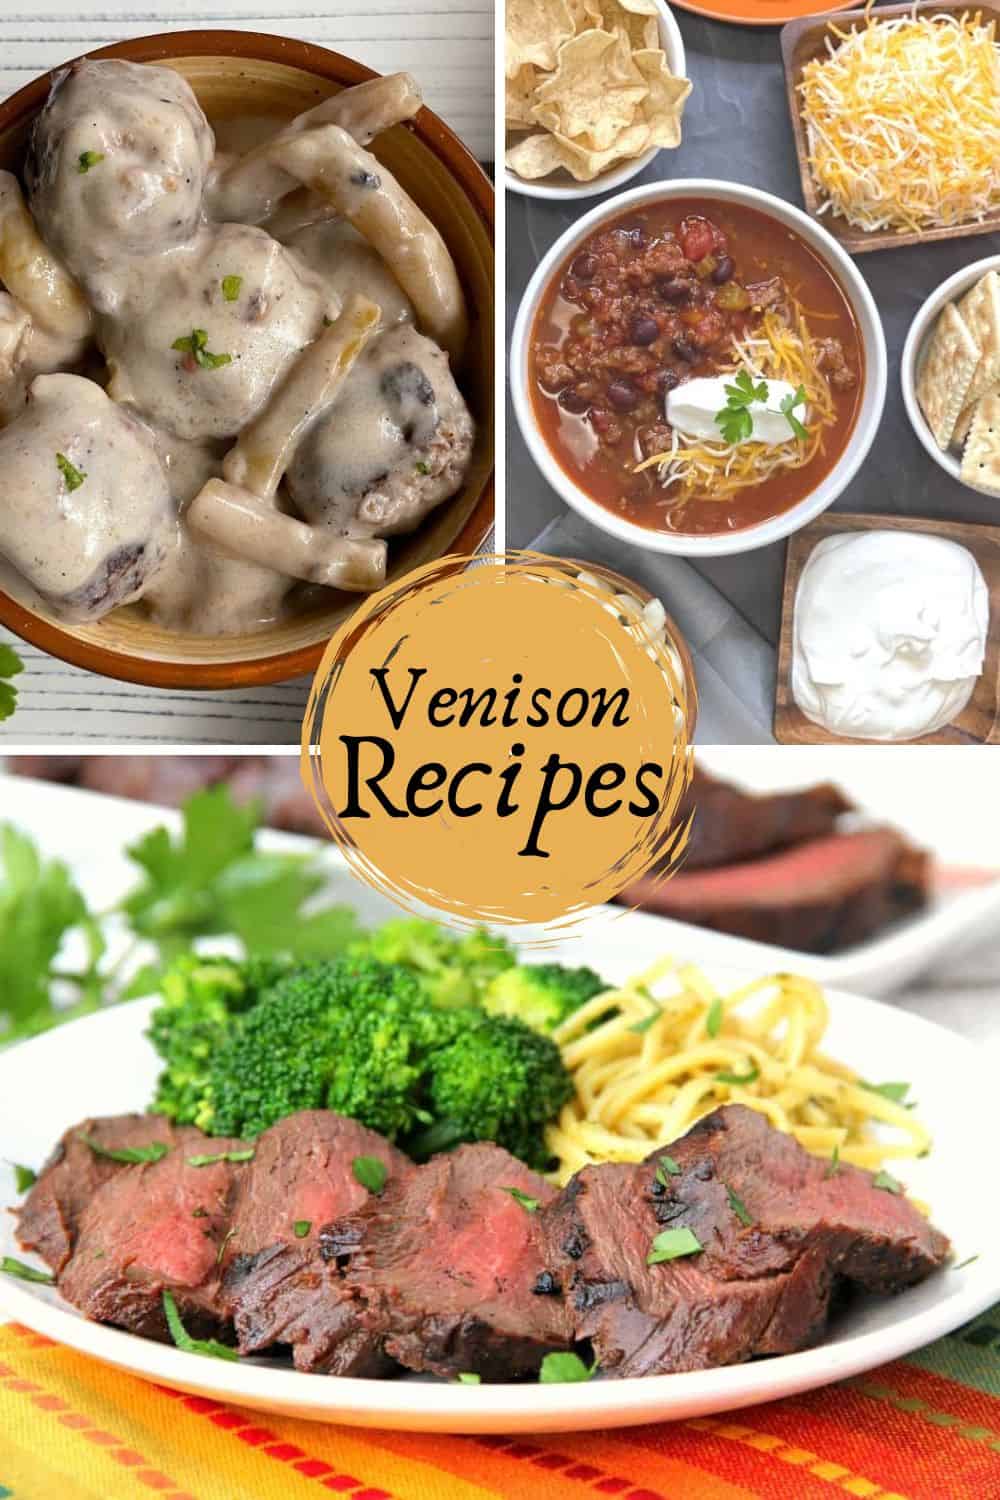 Venison Recipes - Venison Meatballs, Venison Chili, and Venison Tenderloin